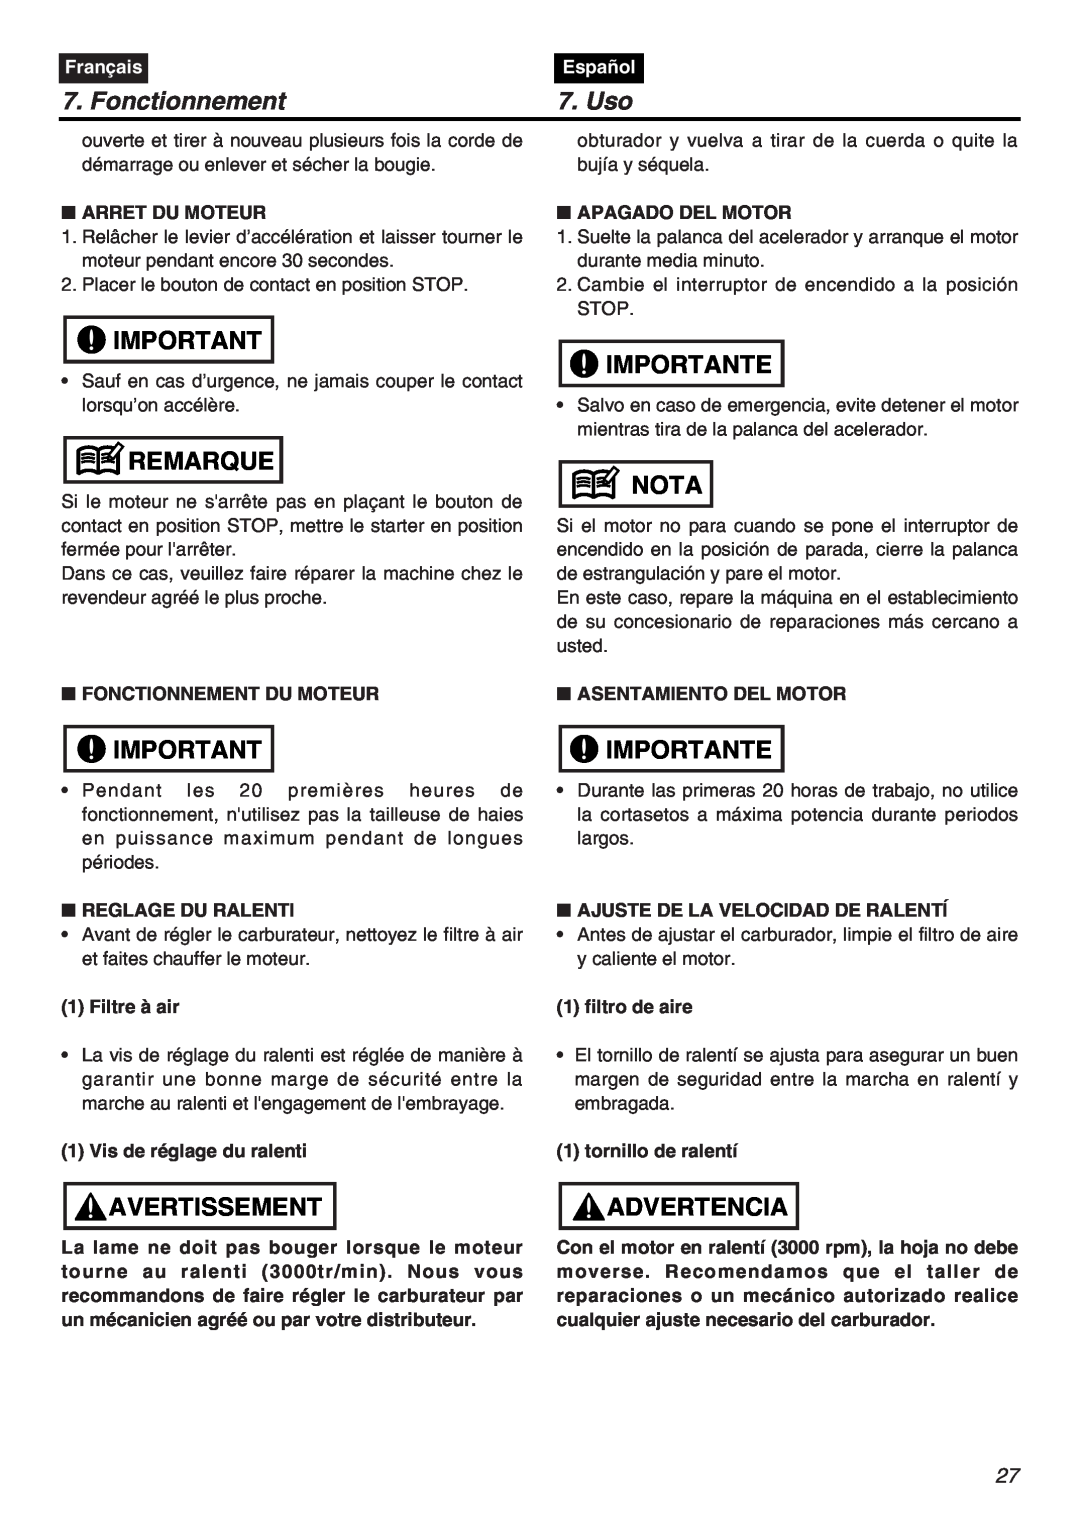 RedMax CHTZ2401L-CA manual Fonctionnement, Uso, Remarque, Avertissement, Importante, Nota, Advertencia, Français, Español 